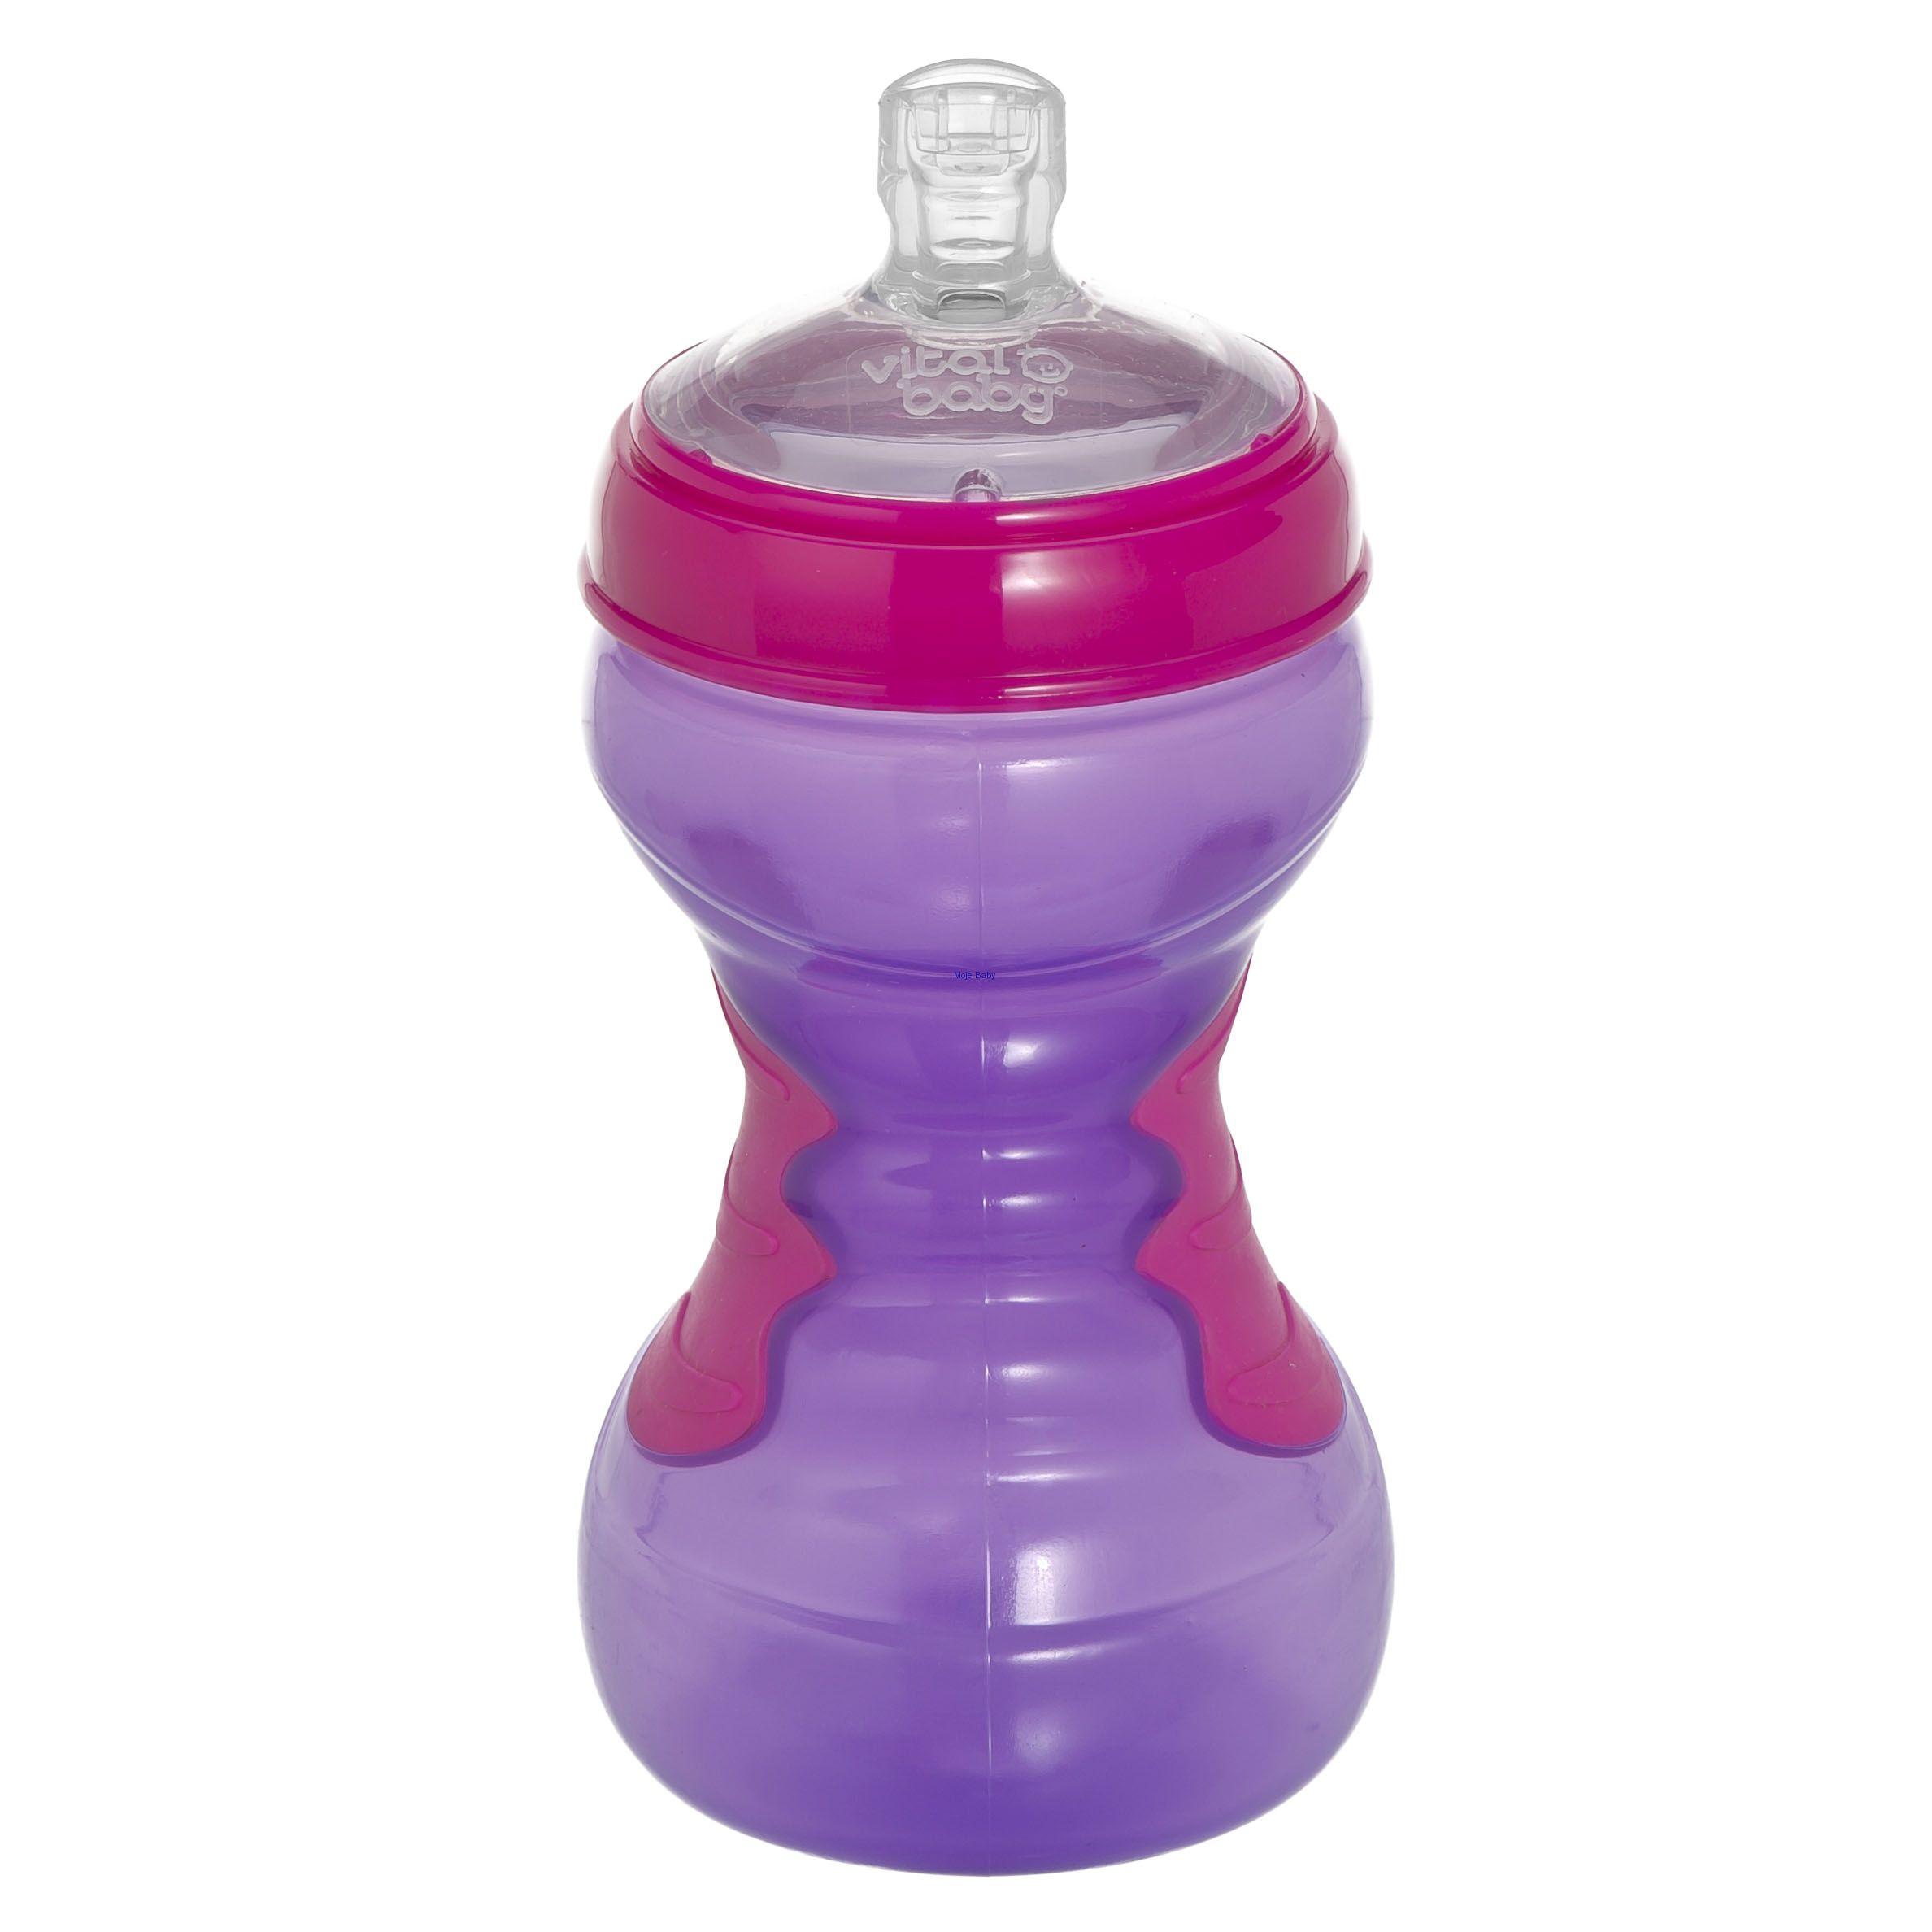 Vital baby športová fľaša so slamkou 440ml 12m+,ružová